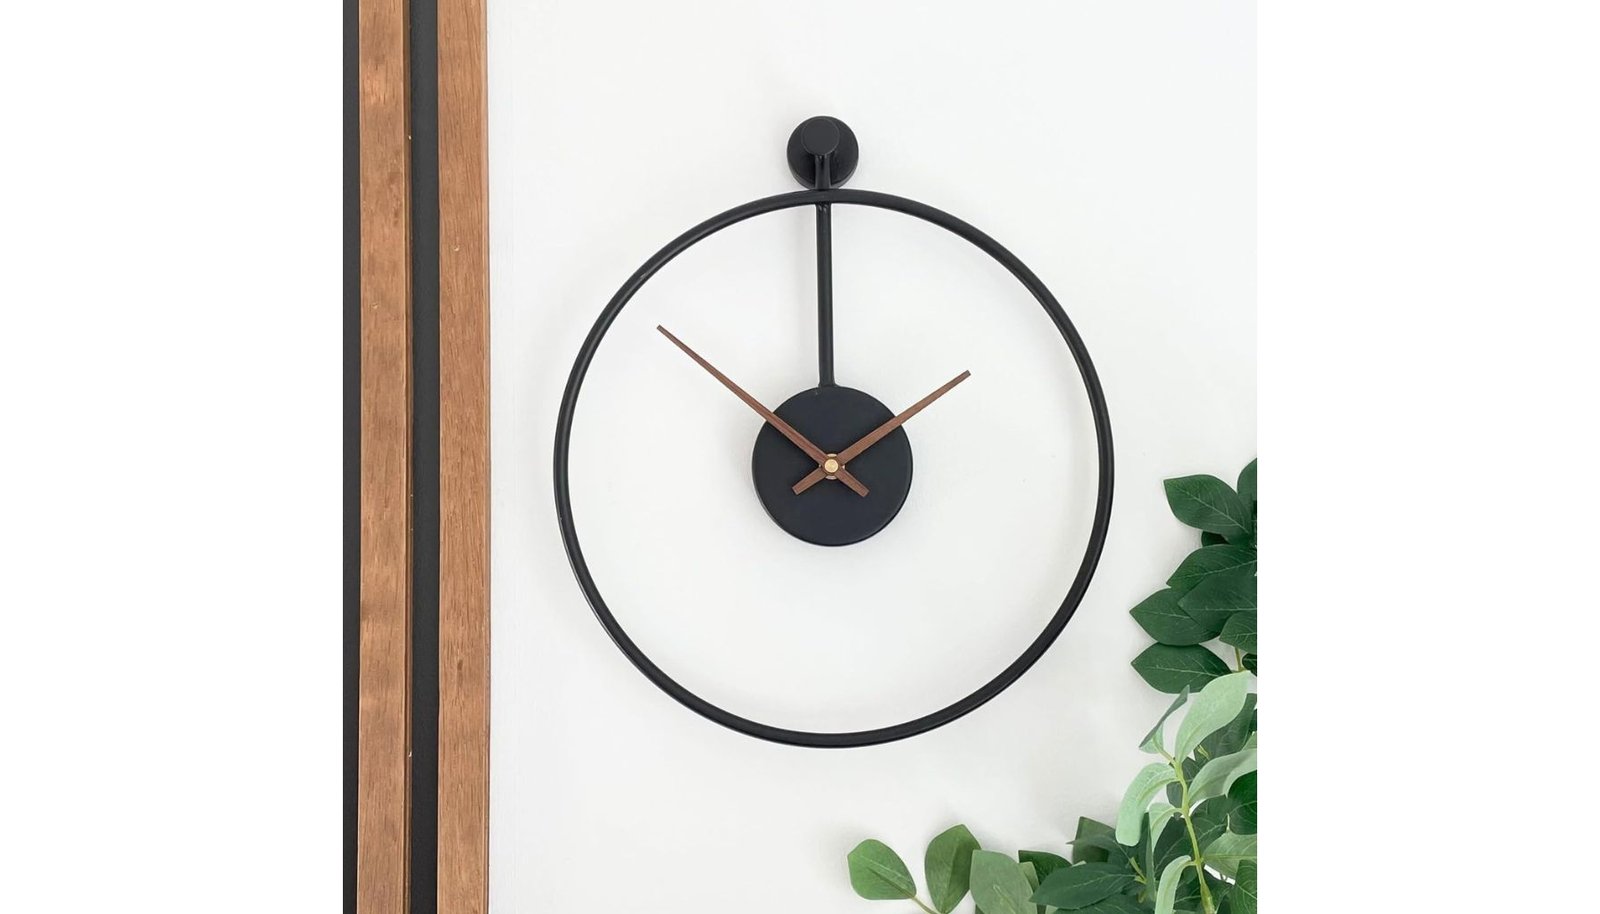 OAKOA 12 Inch Silent Modern Wall Clock Review